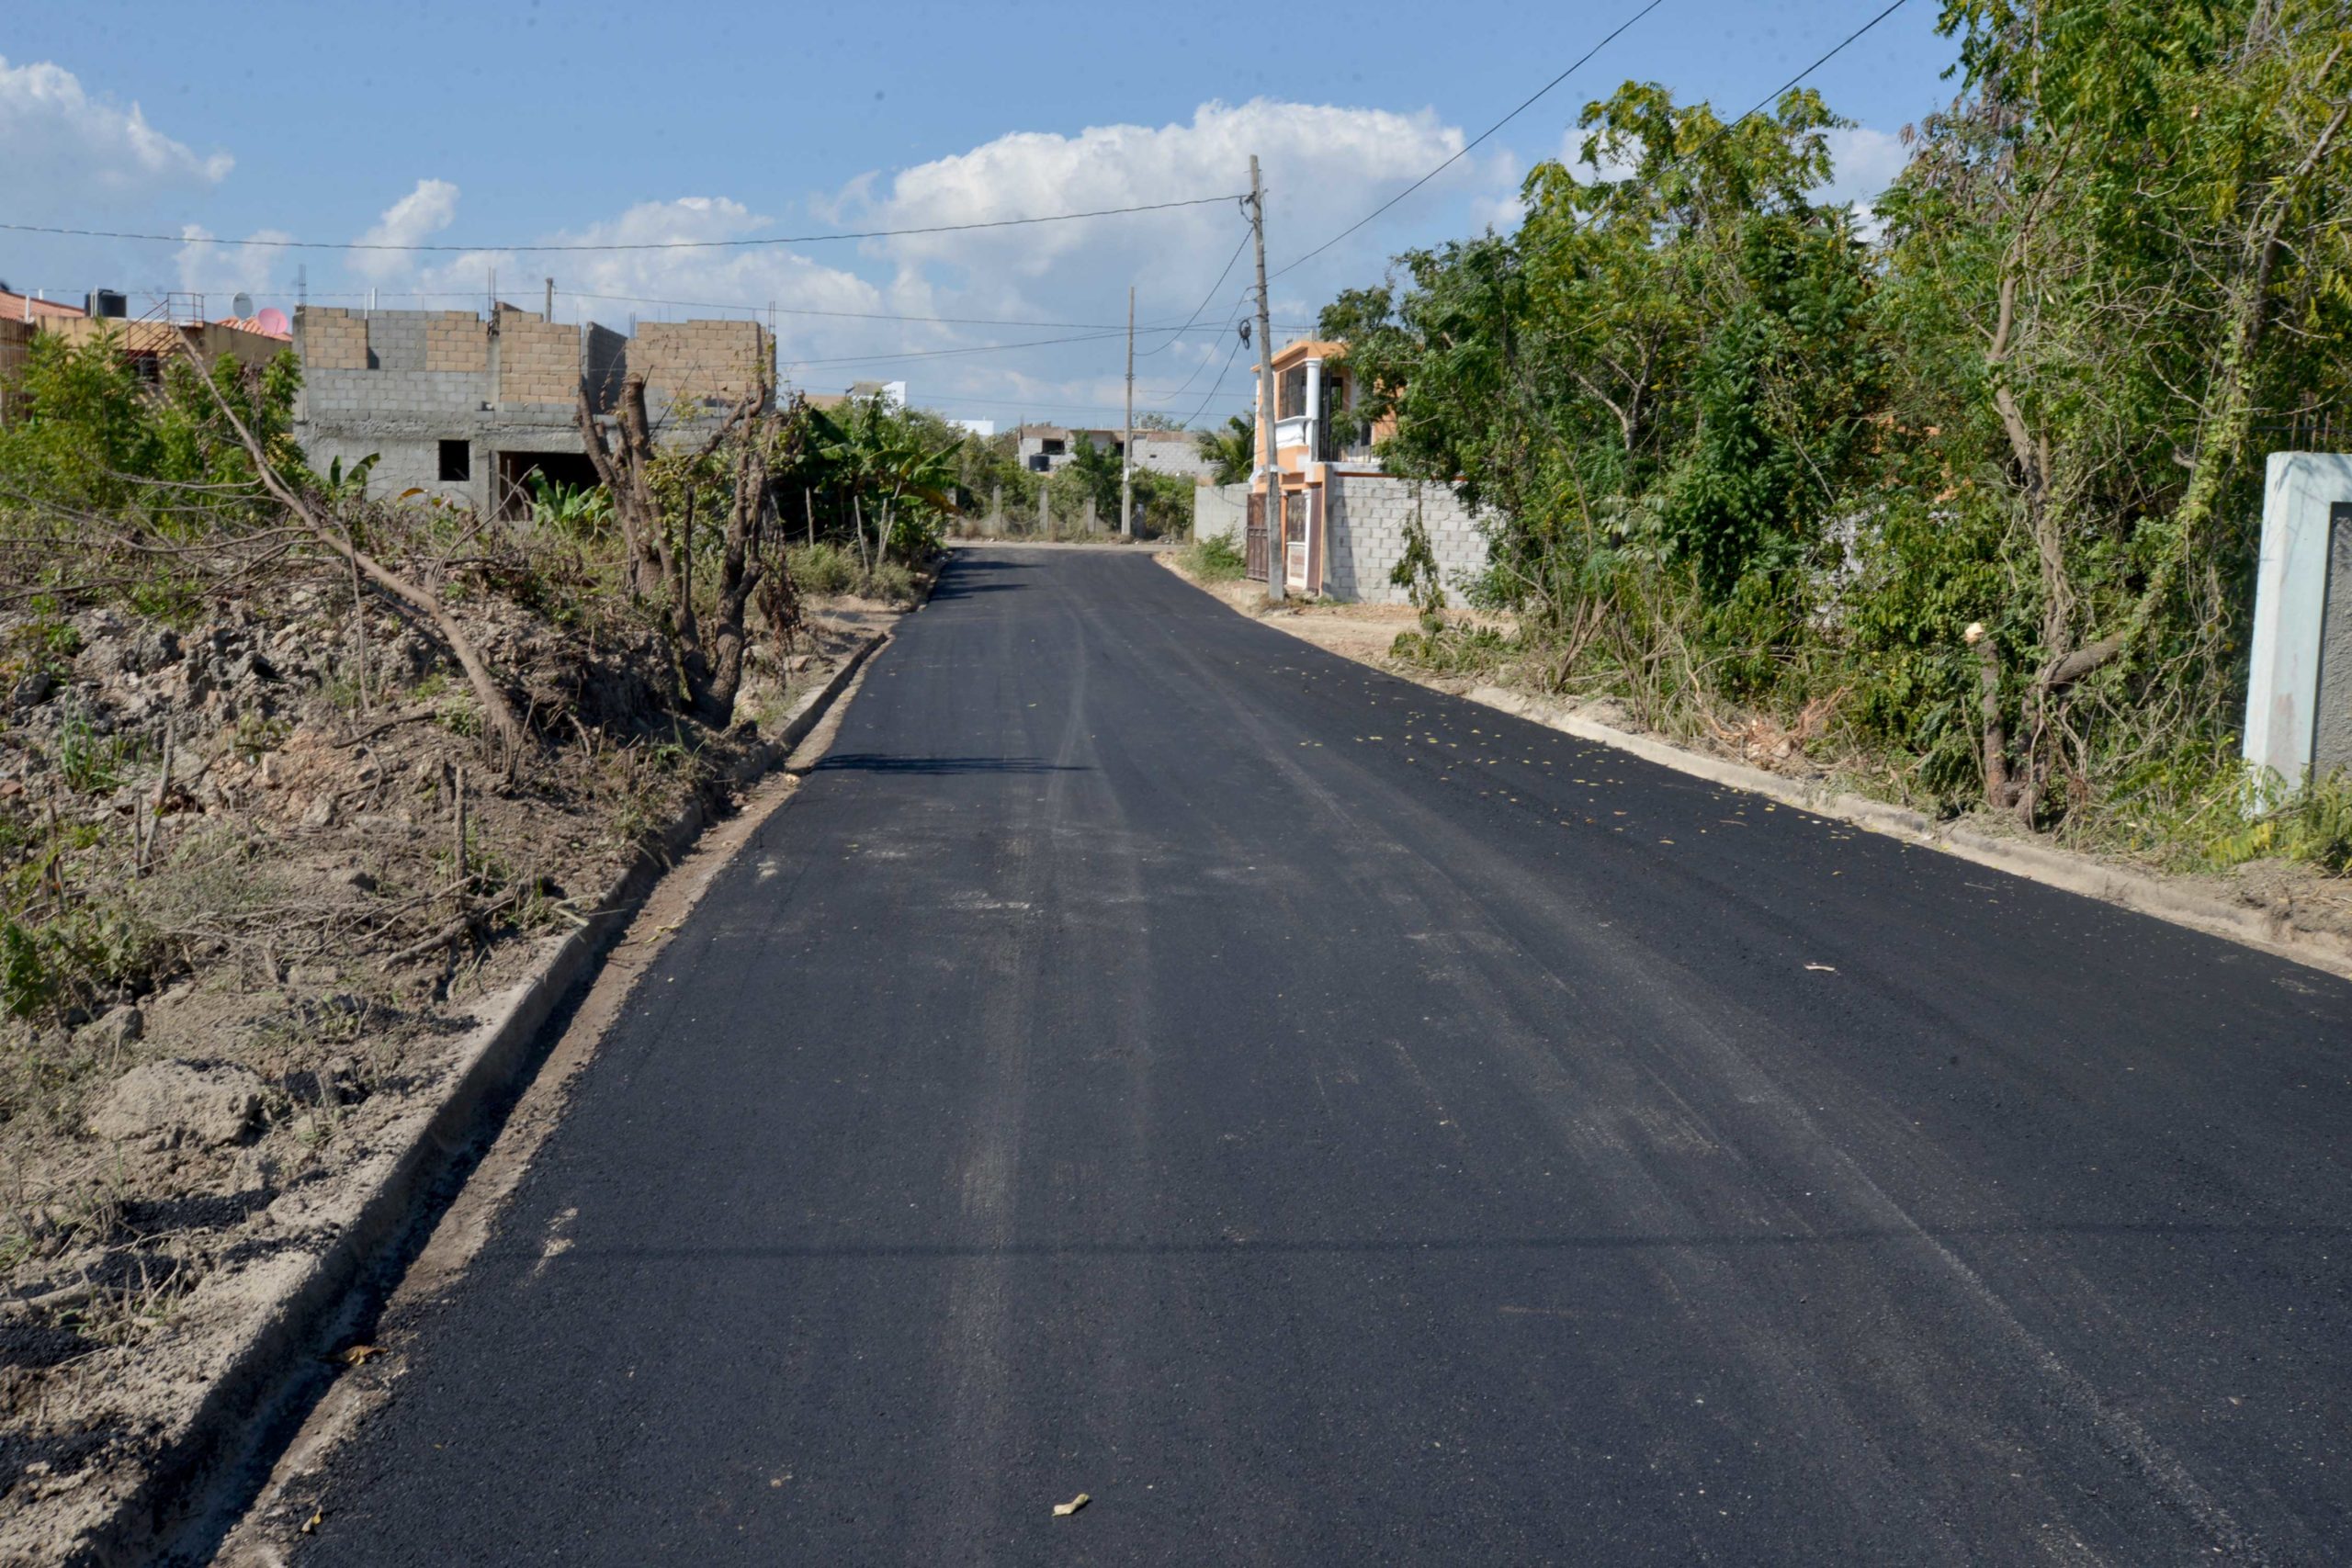 Continúa el asfaltado en Calles y carreteras de distintas comunidades de RD